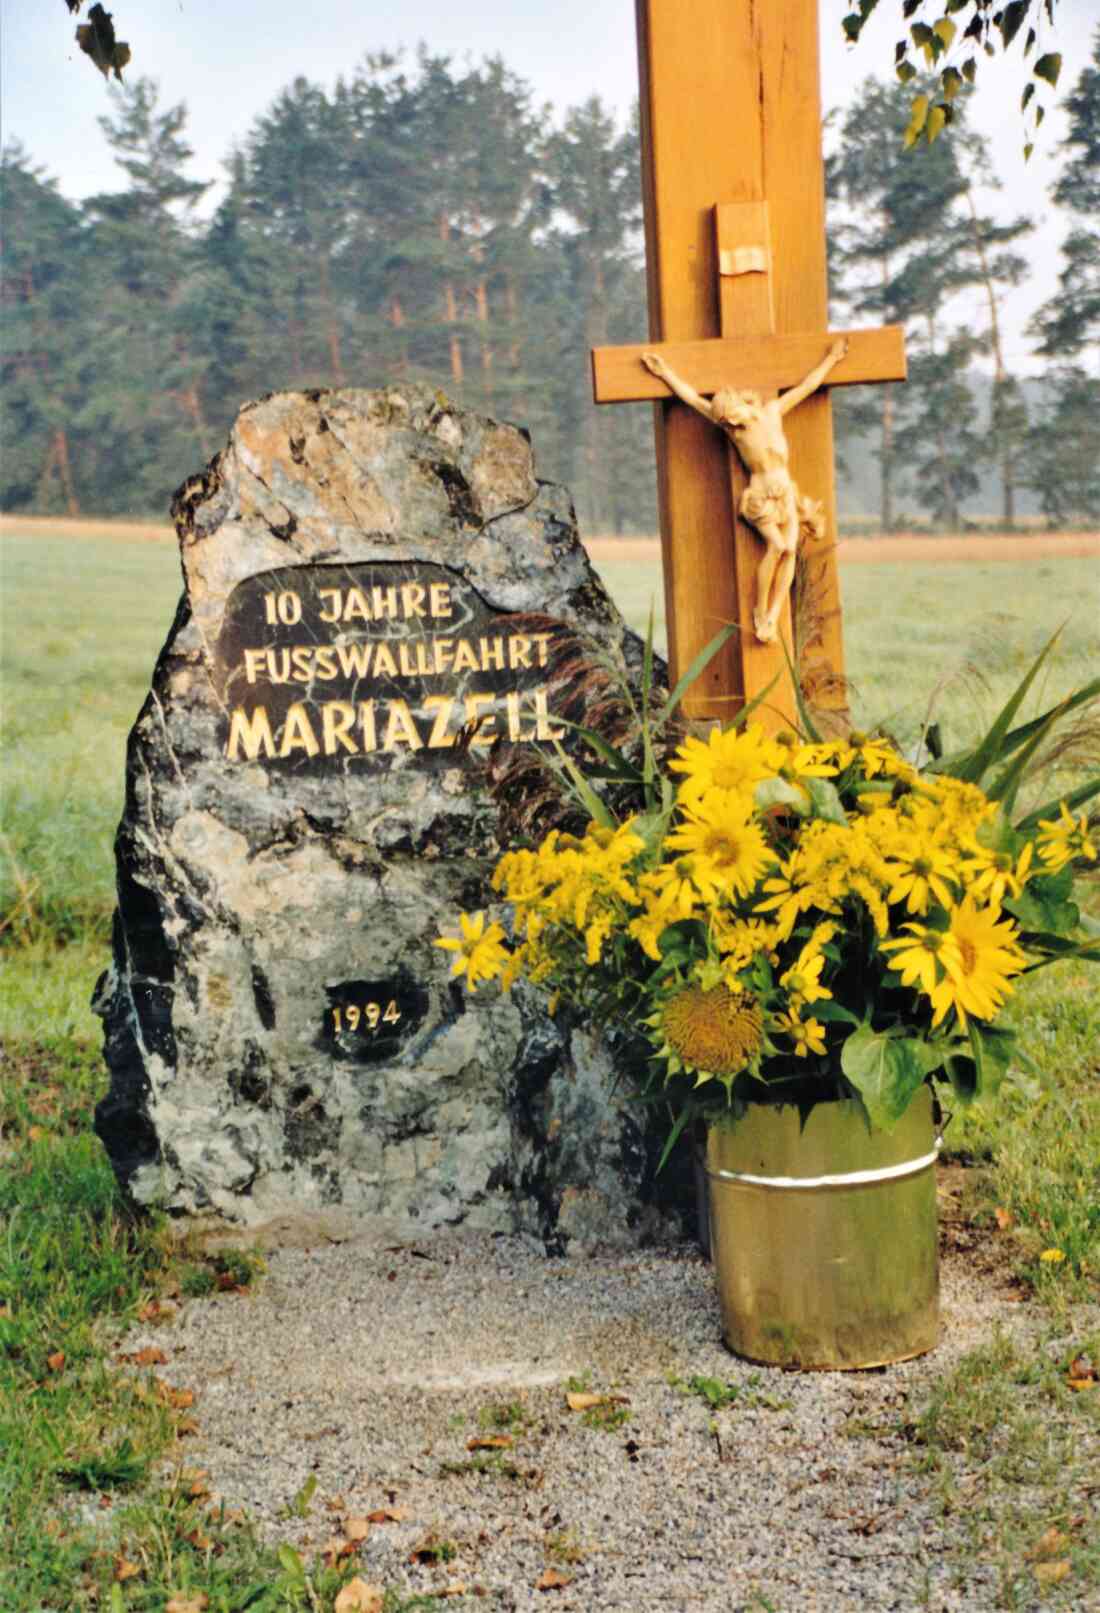 Röm. kath. Pfarre: Wegkreuzsetzung anlässlich der 10. Fußwallfahrt nach Mariazell - 1994 (Anfertigung Willi Schmalzl)